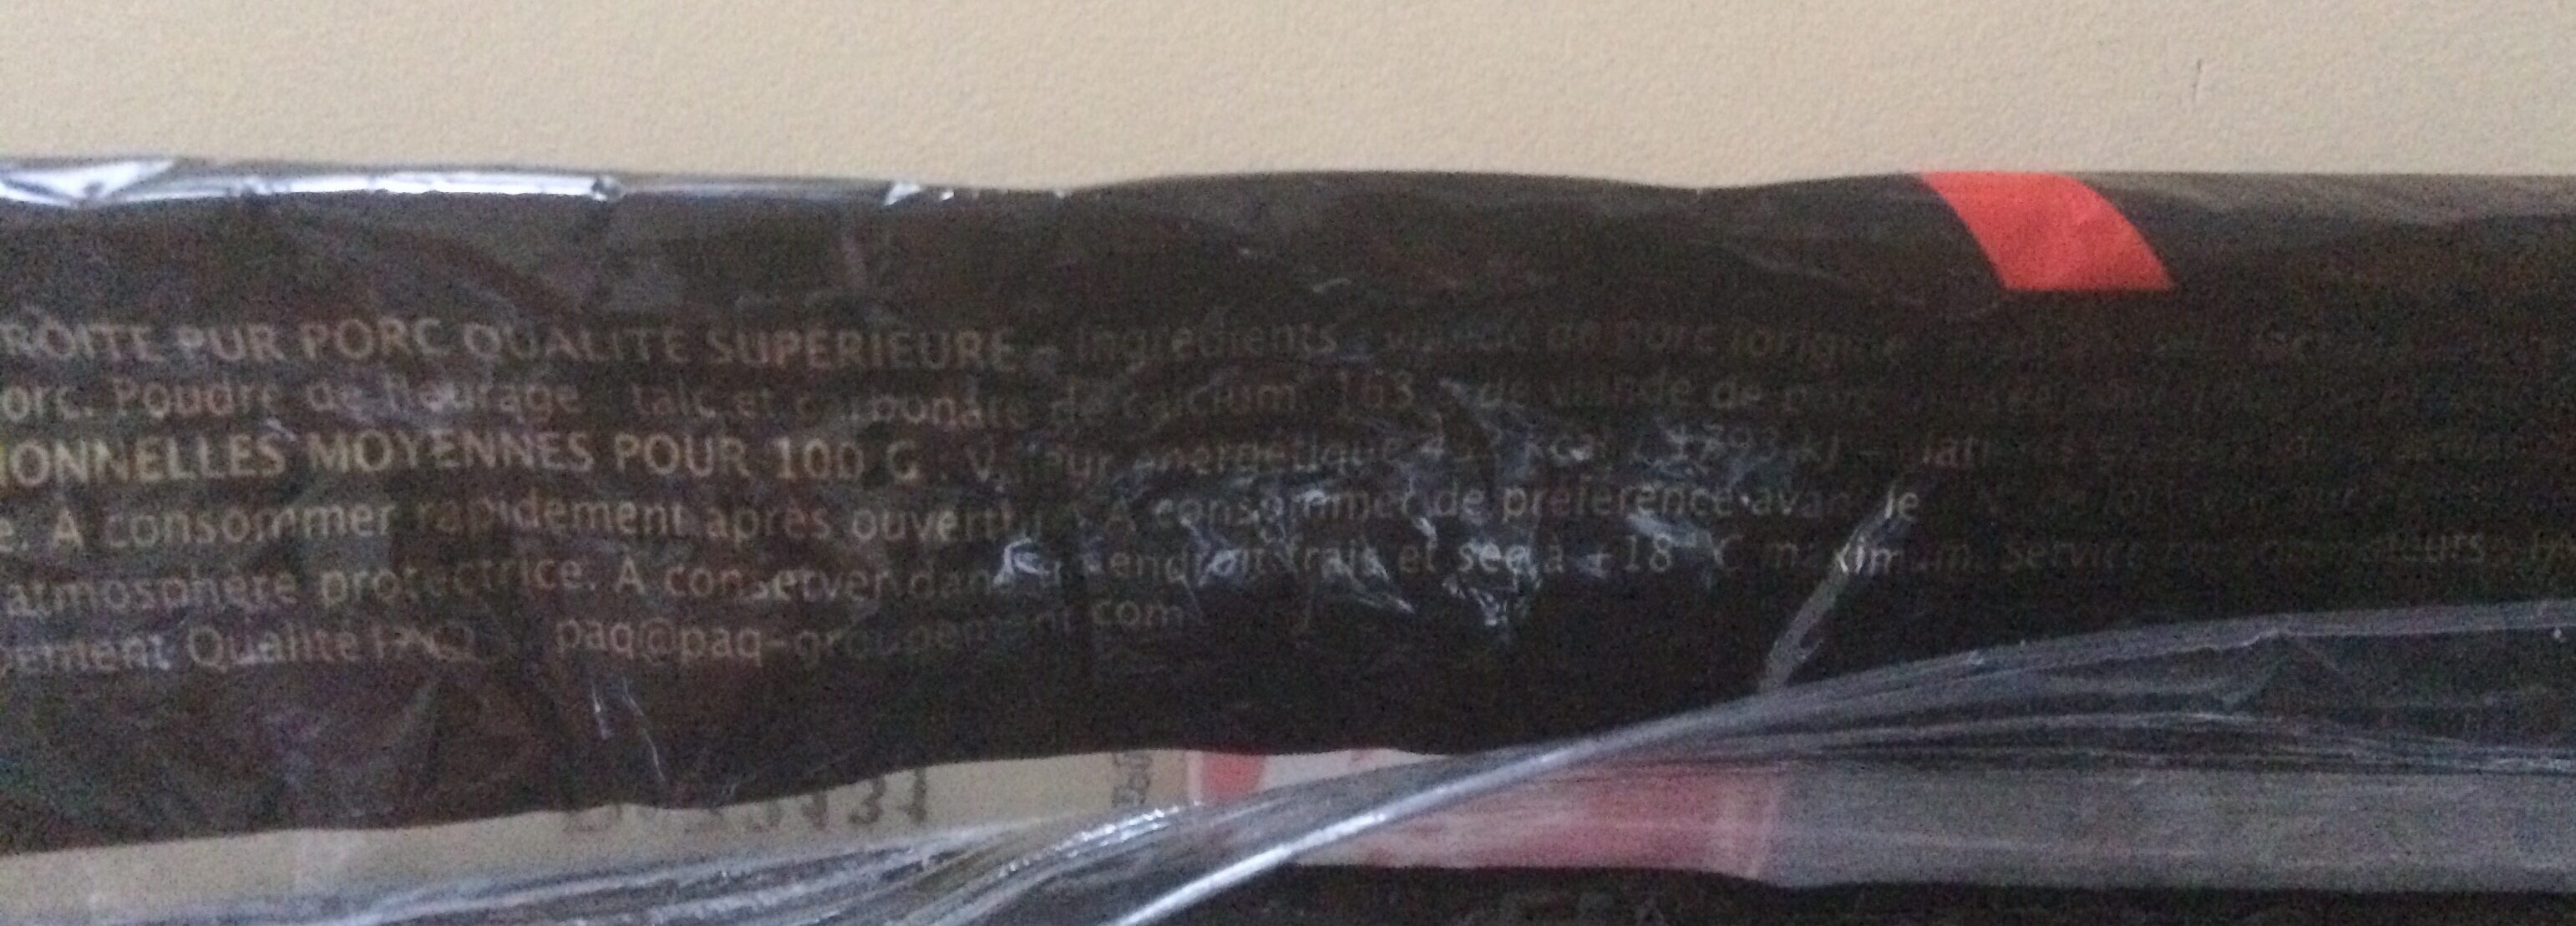 Montagne Noire Saucisse sèche droite Label Rouge le paquet de 225 g - Ingredients - fr